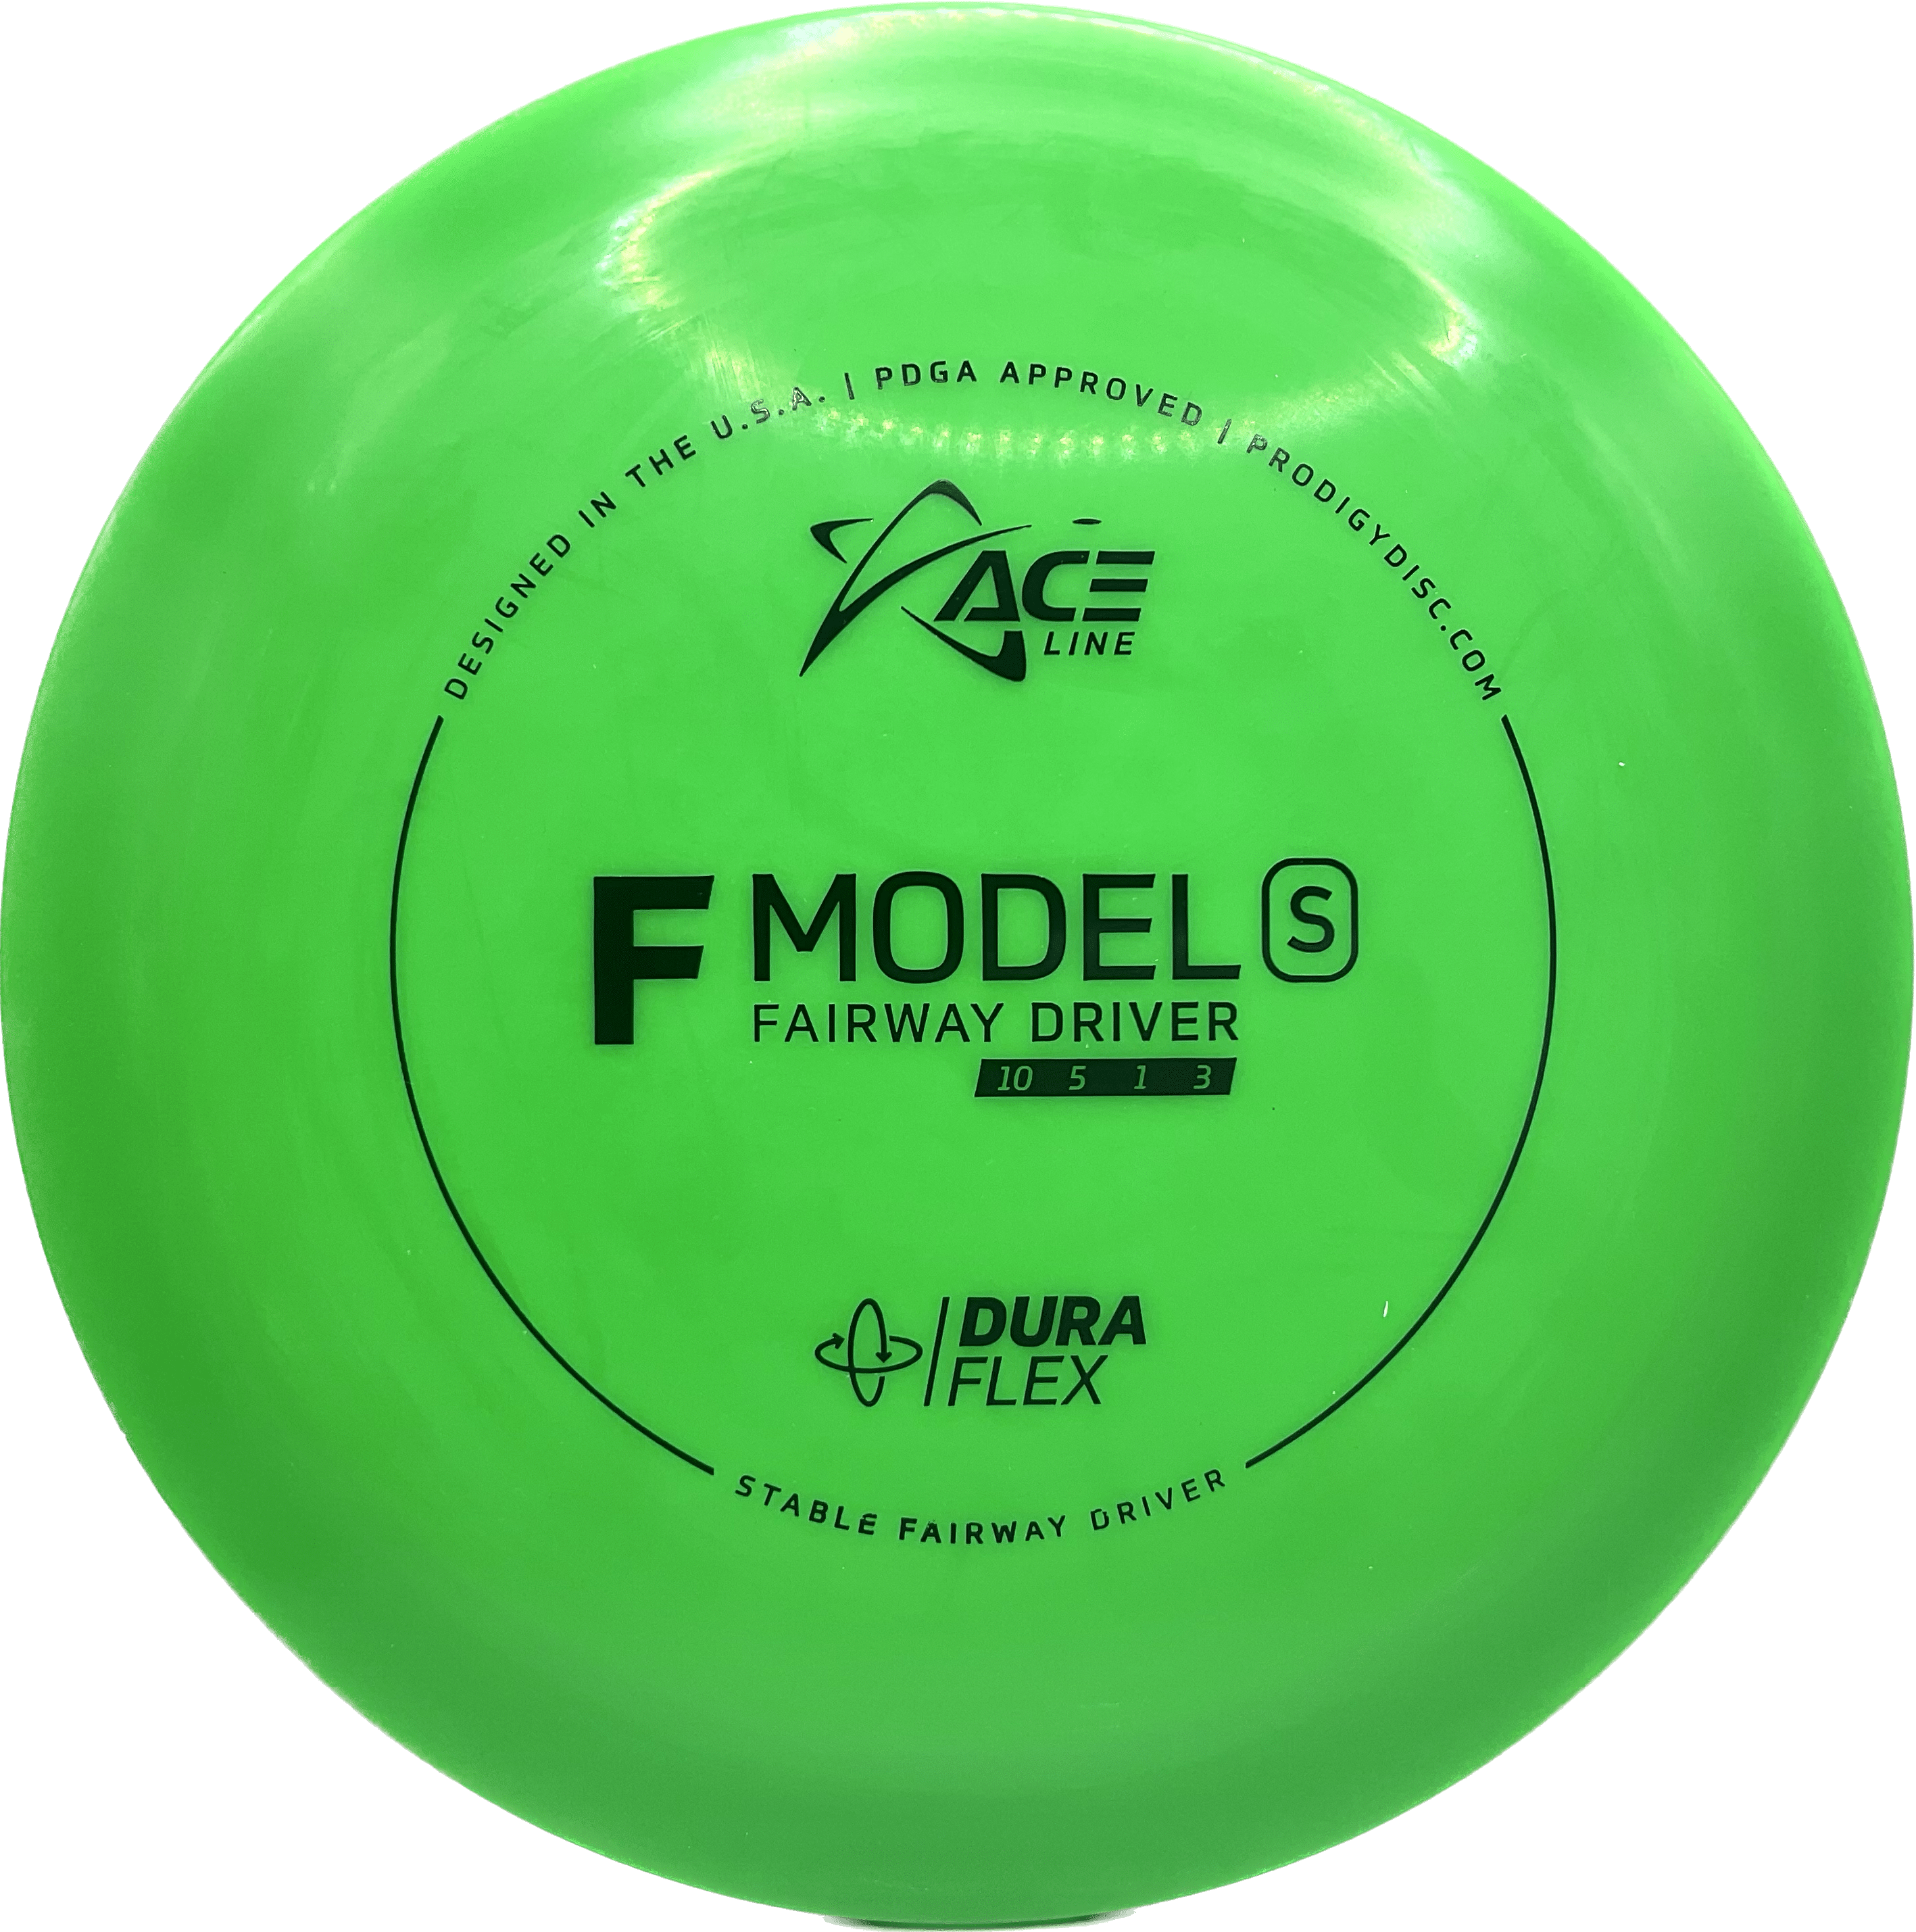 Overthrow Disc Golf Disc Prodigy F Model S, DuraFlex, 170-175, Green, Black Matte